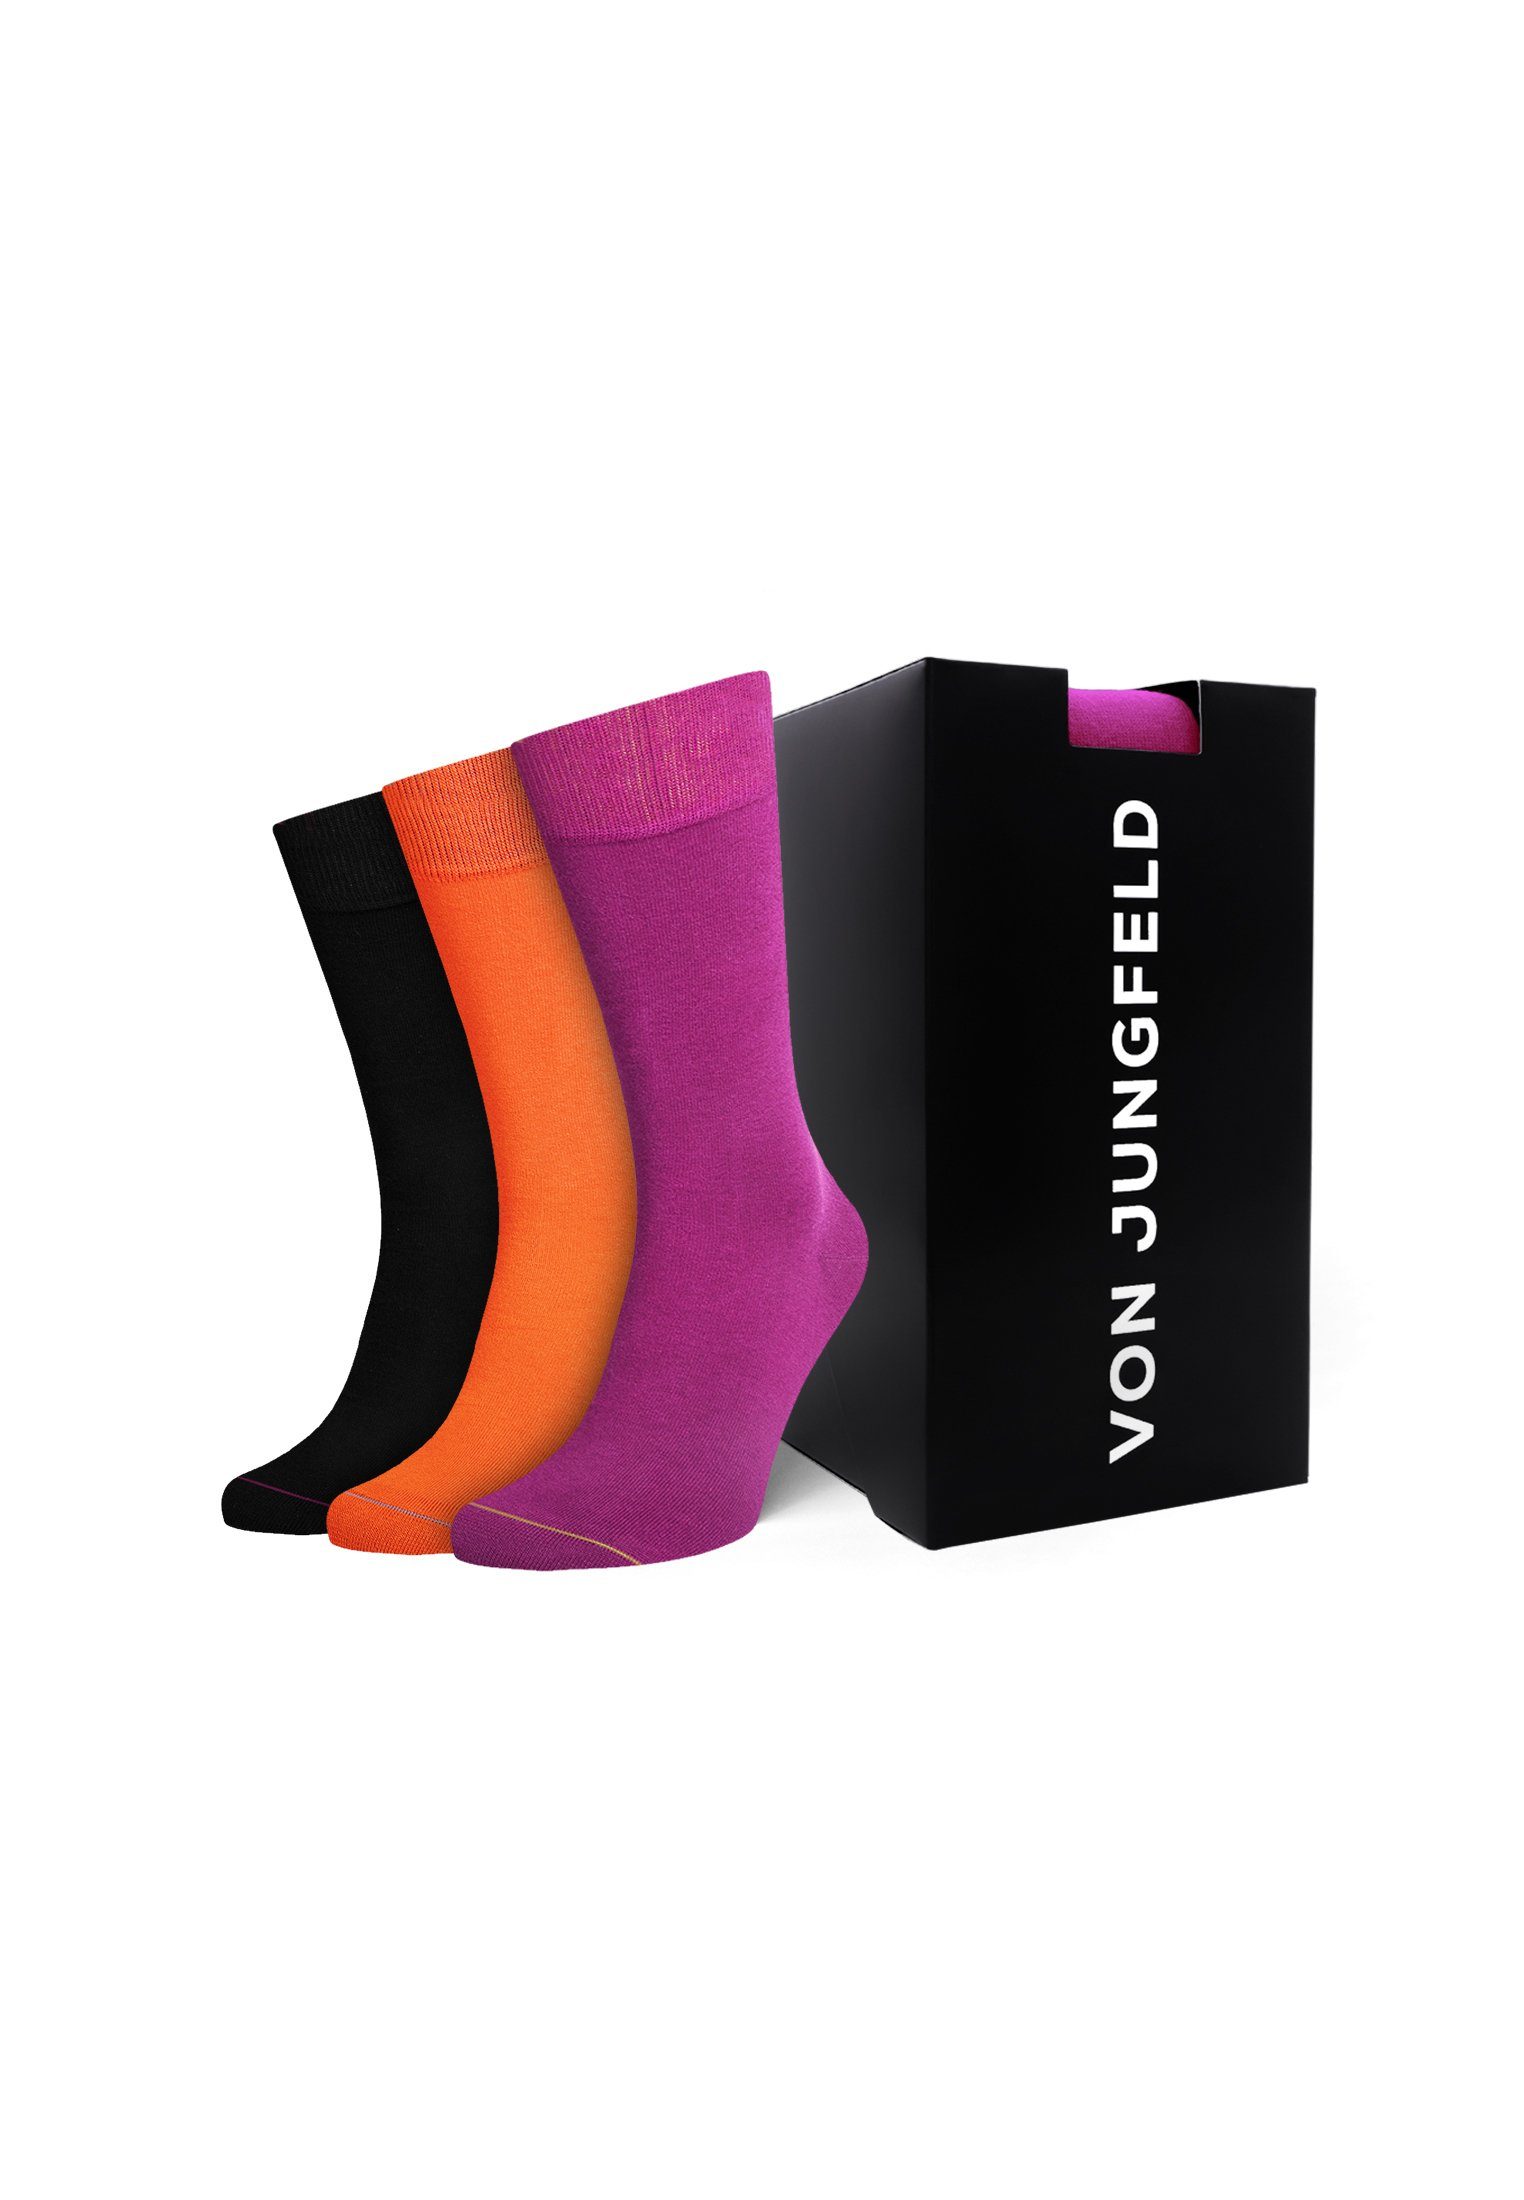 Super günstig von Jungfeld Socken Geschenk Box